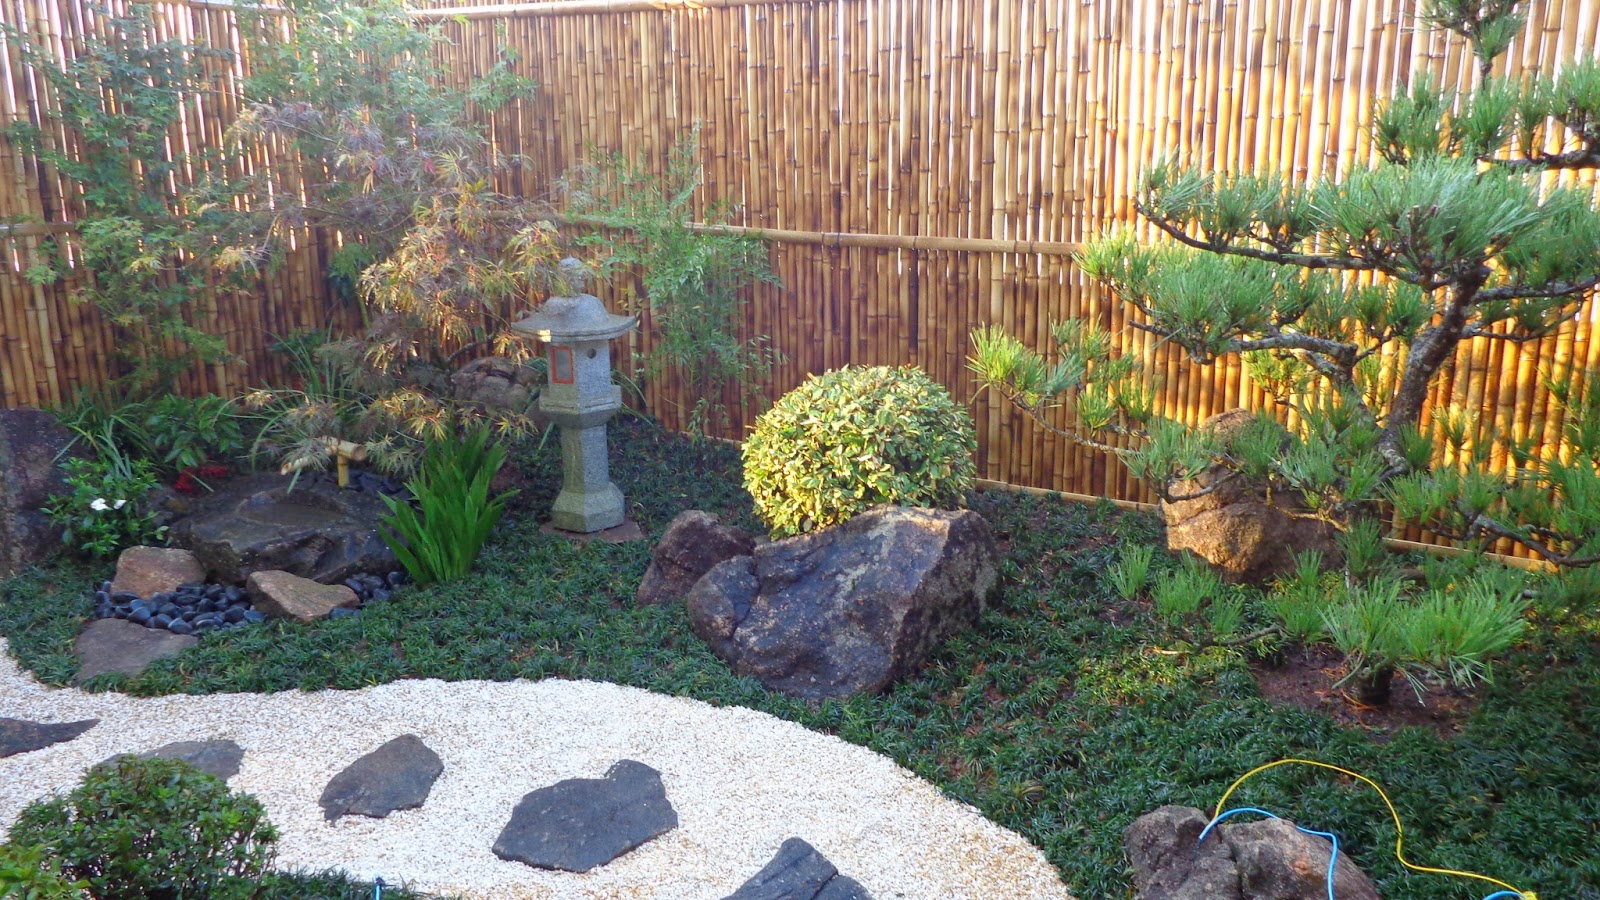 kuromatsu pinheiro negro em jardim japones